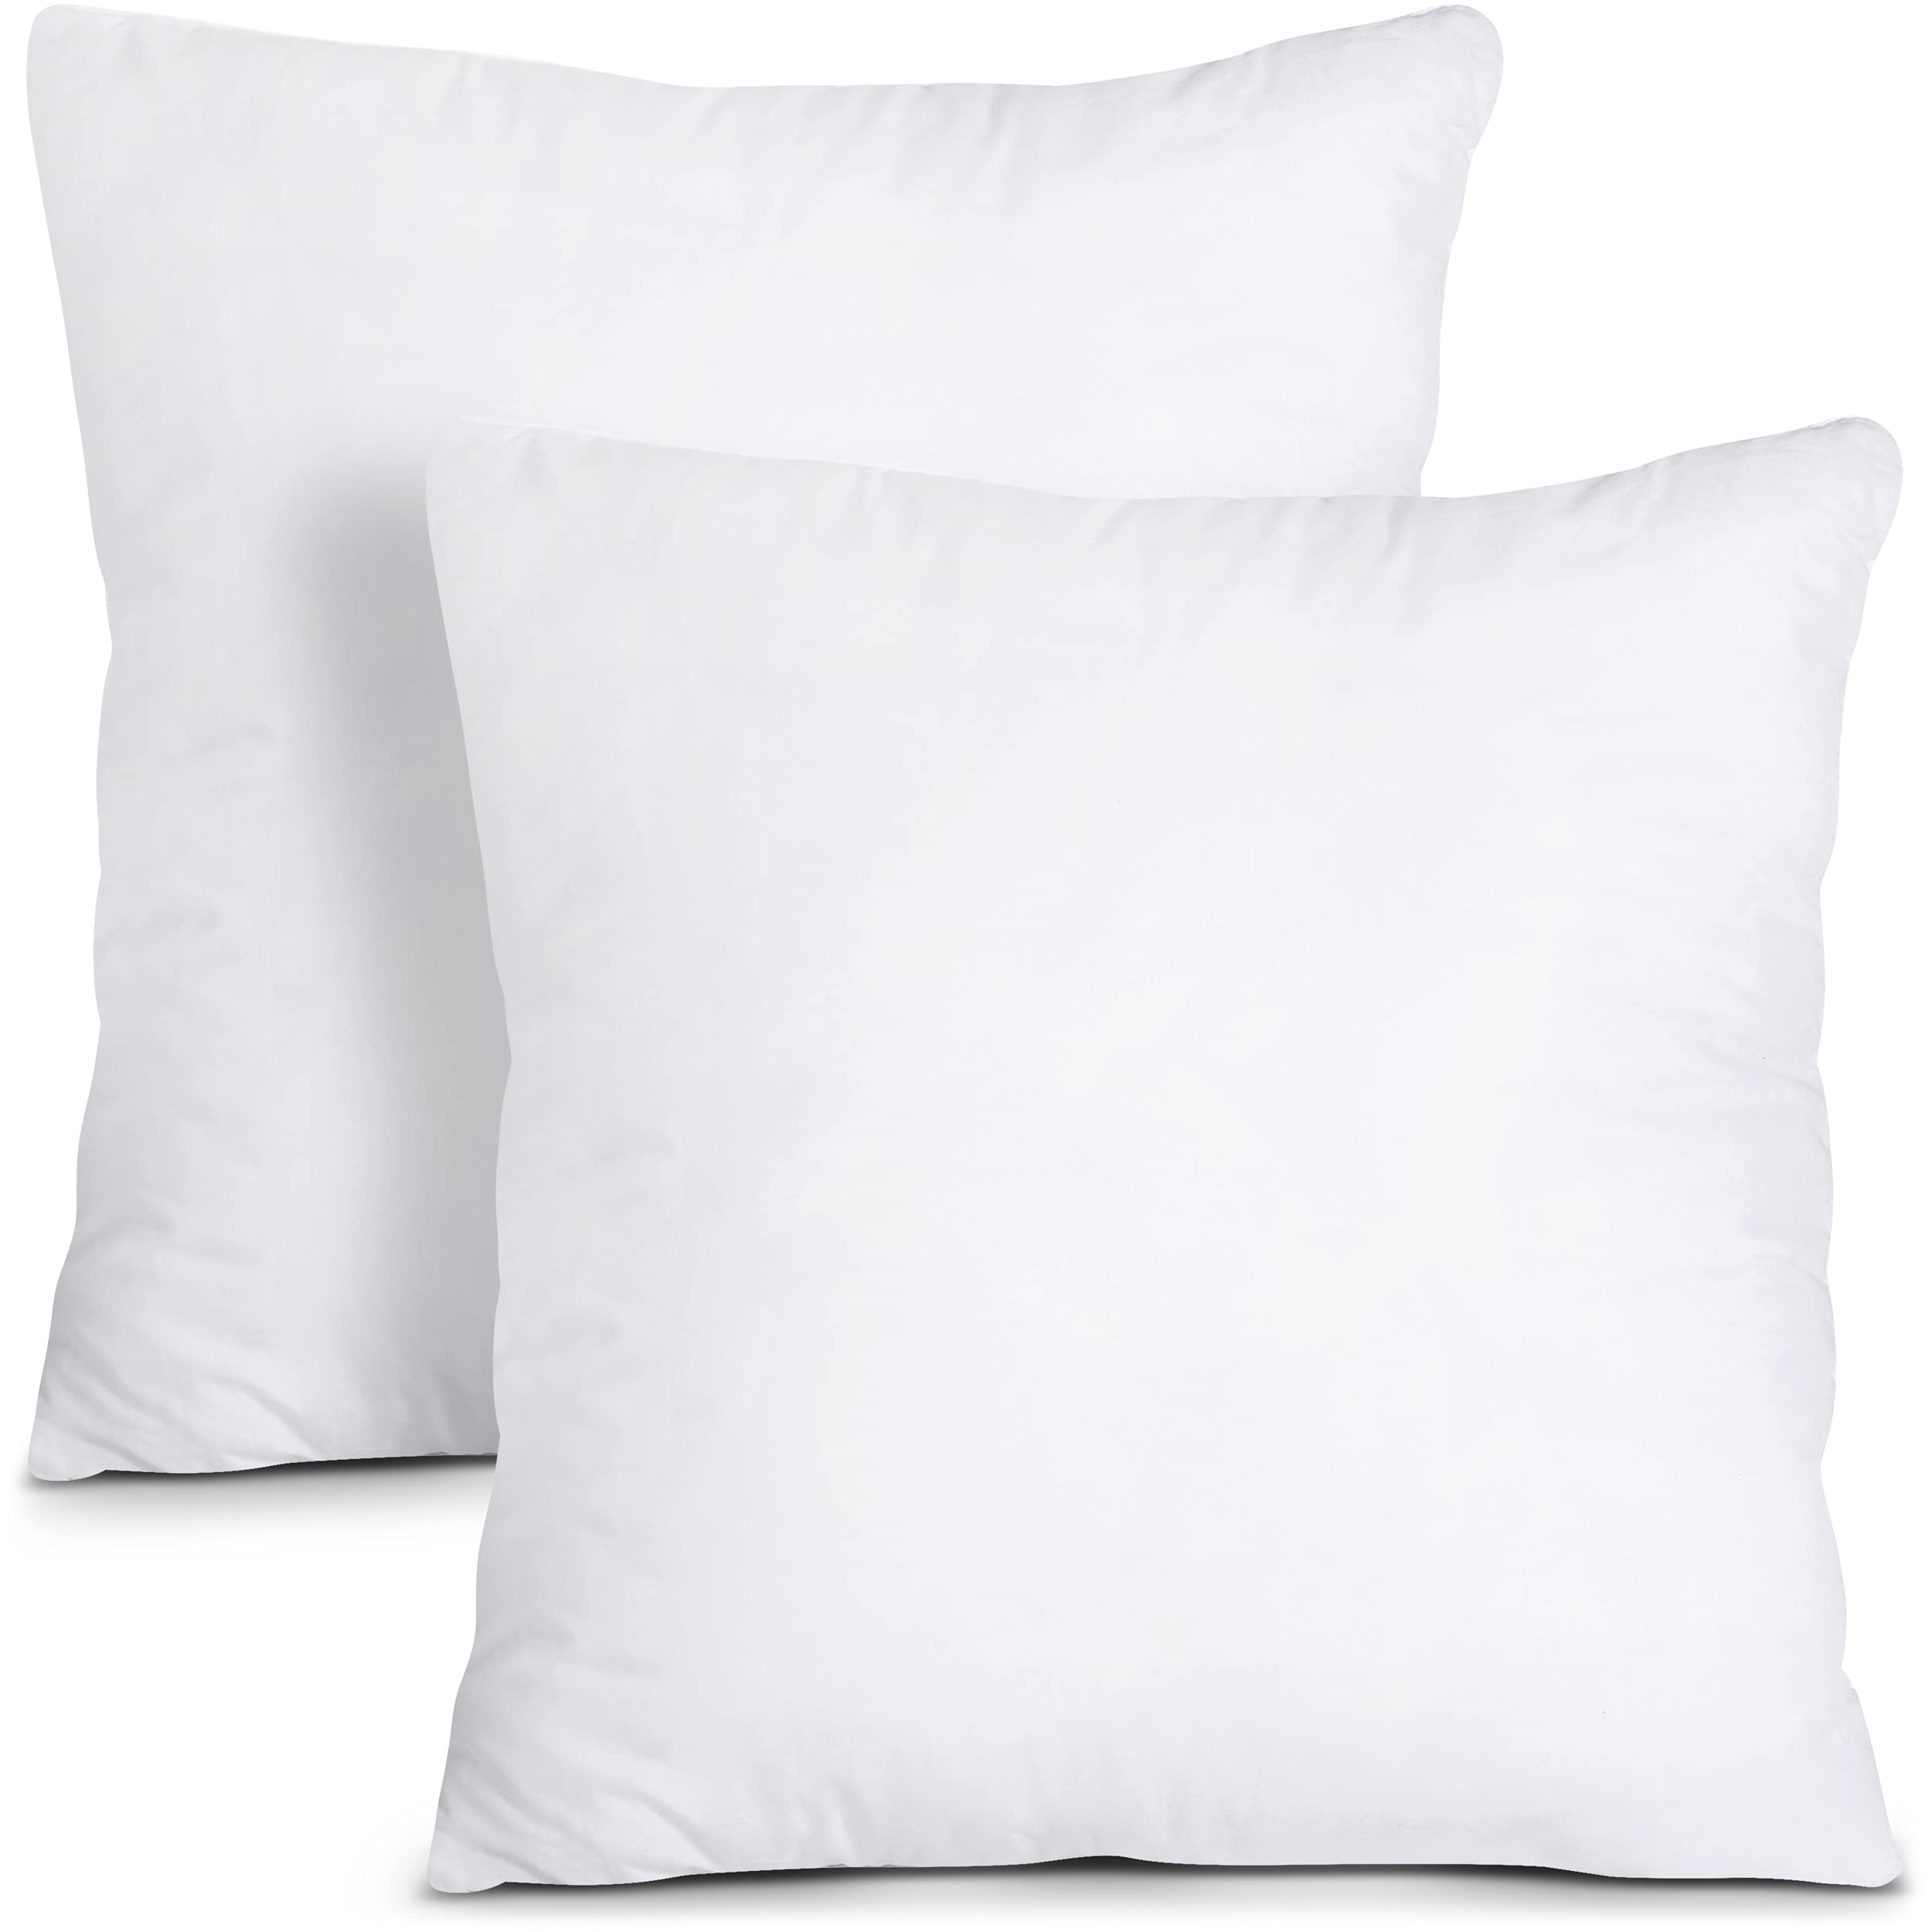 Mua Utopia Bedding Throw Pillows Insert (Pack of 2, White) - 20 x ...